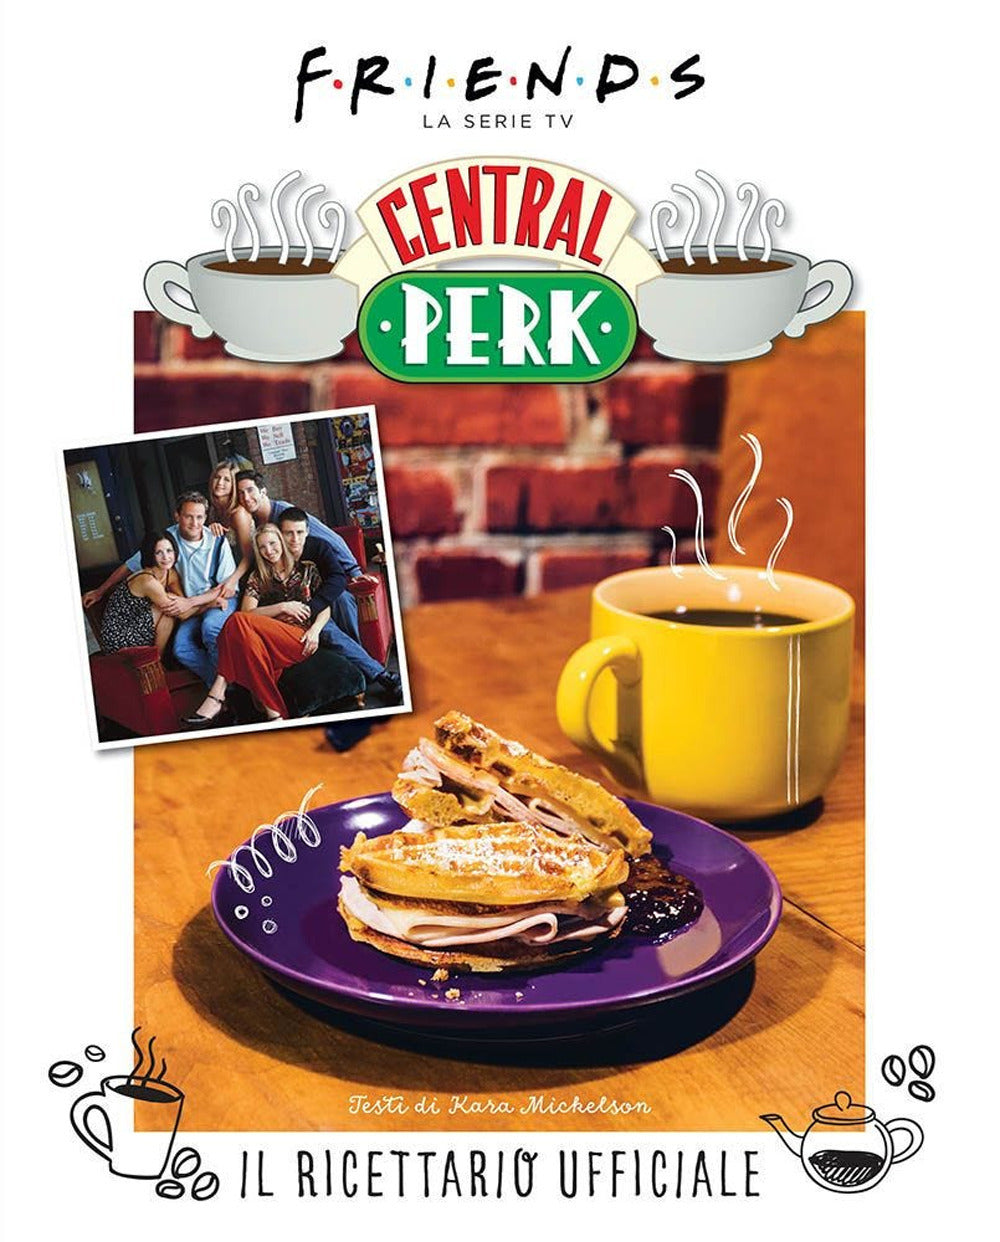 Friends: il ricettario ufficiale del Central Perk. Ediz. illustrata.